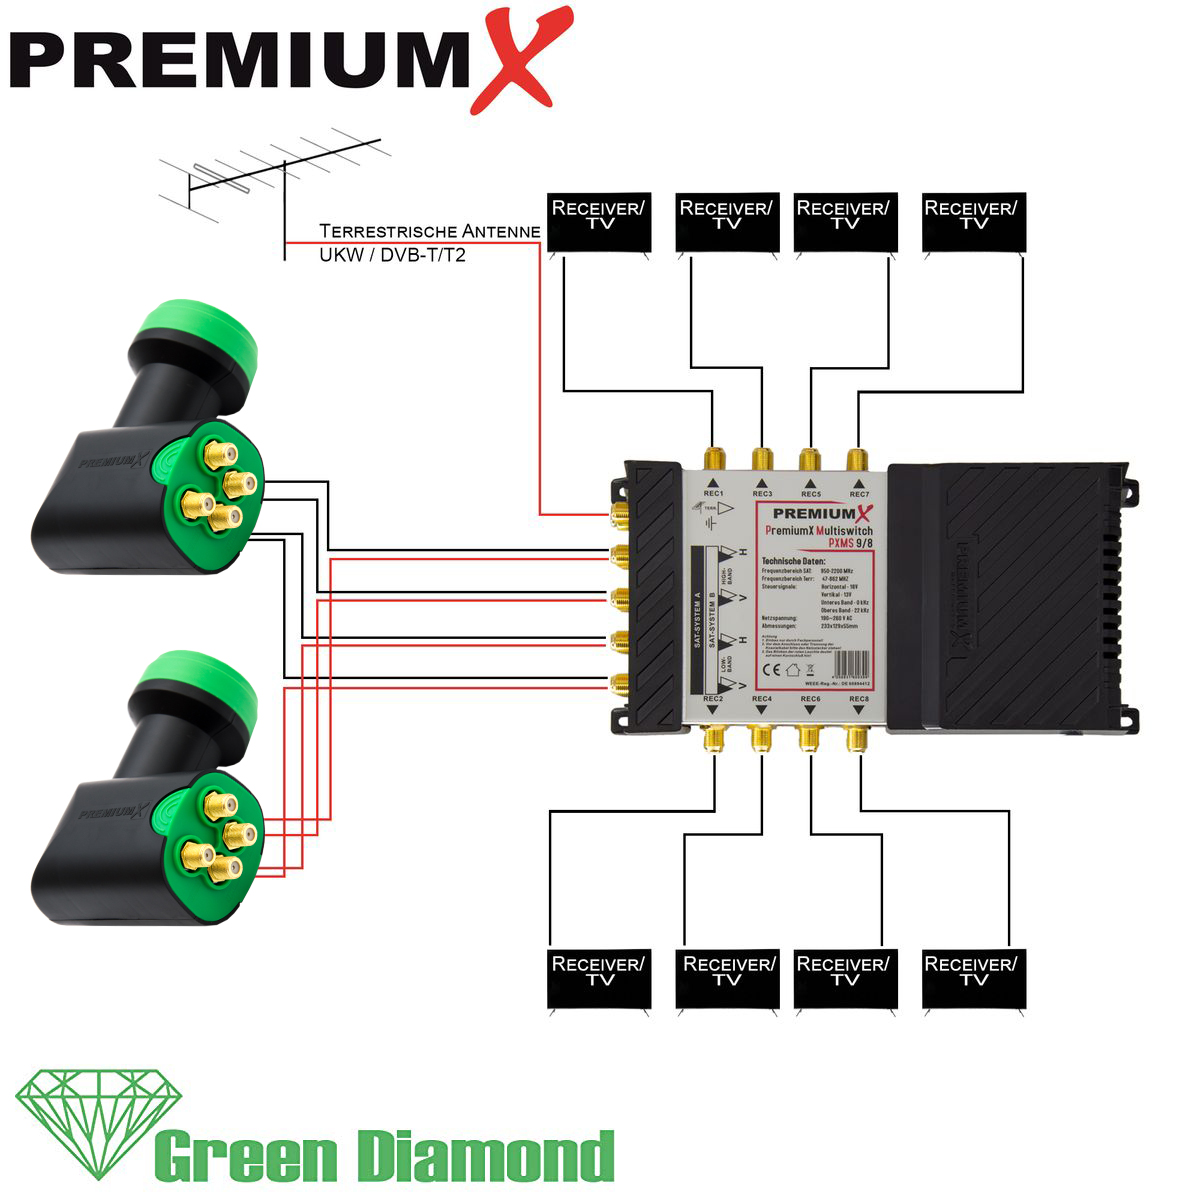 9/8 2x Multifeed Diamond Sat-Multischalter Multischalter LNB PREMIUMX Green F-Stecker Set SAT Quattro 32x